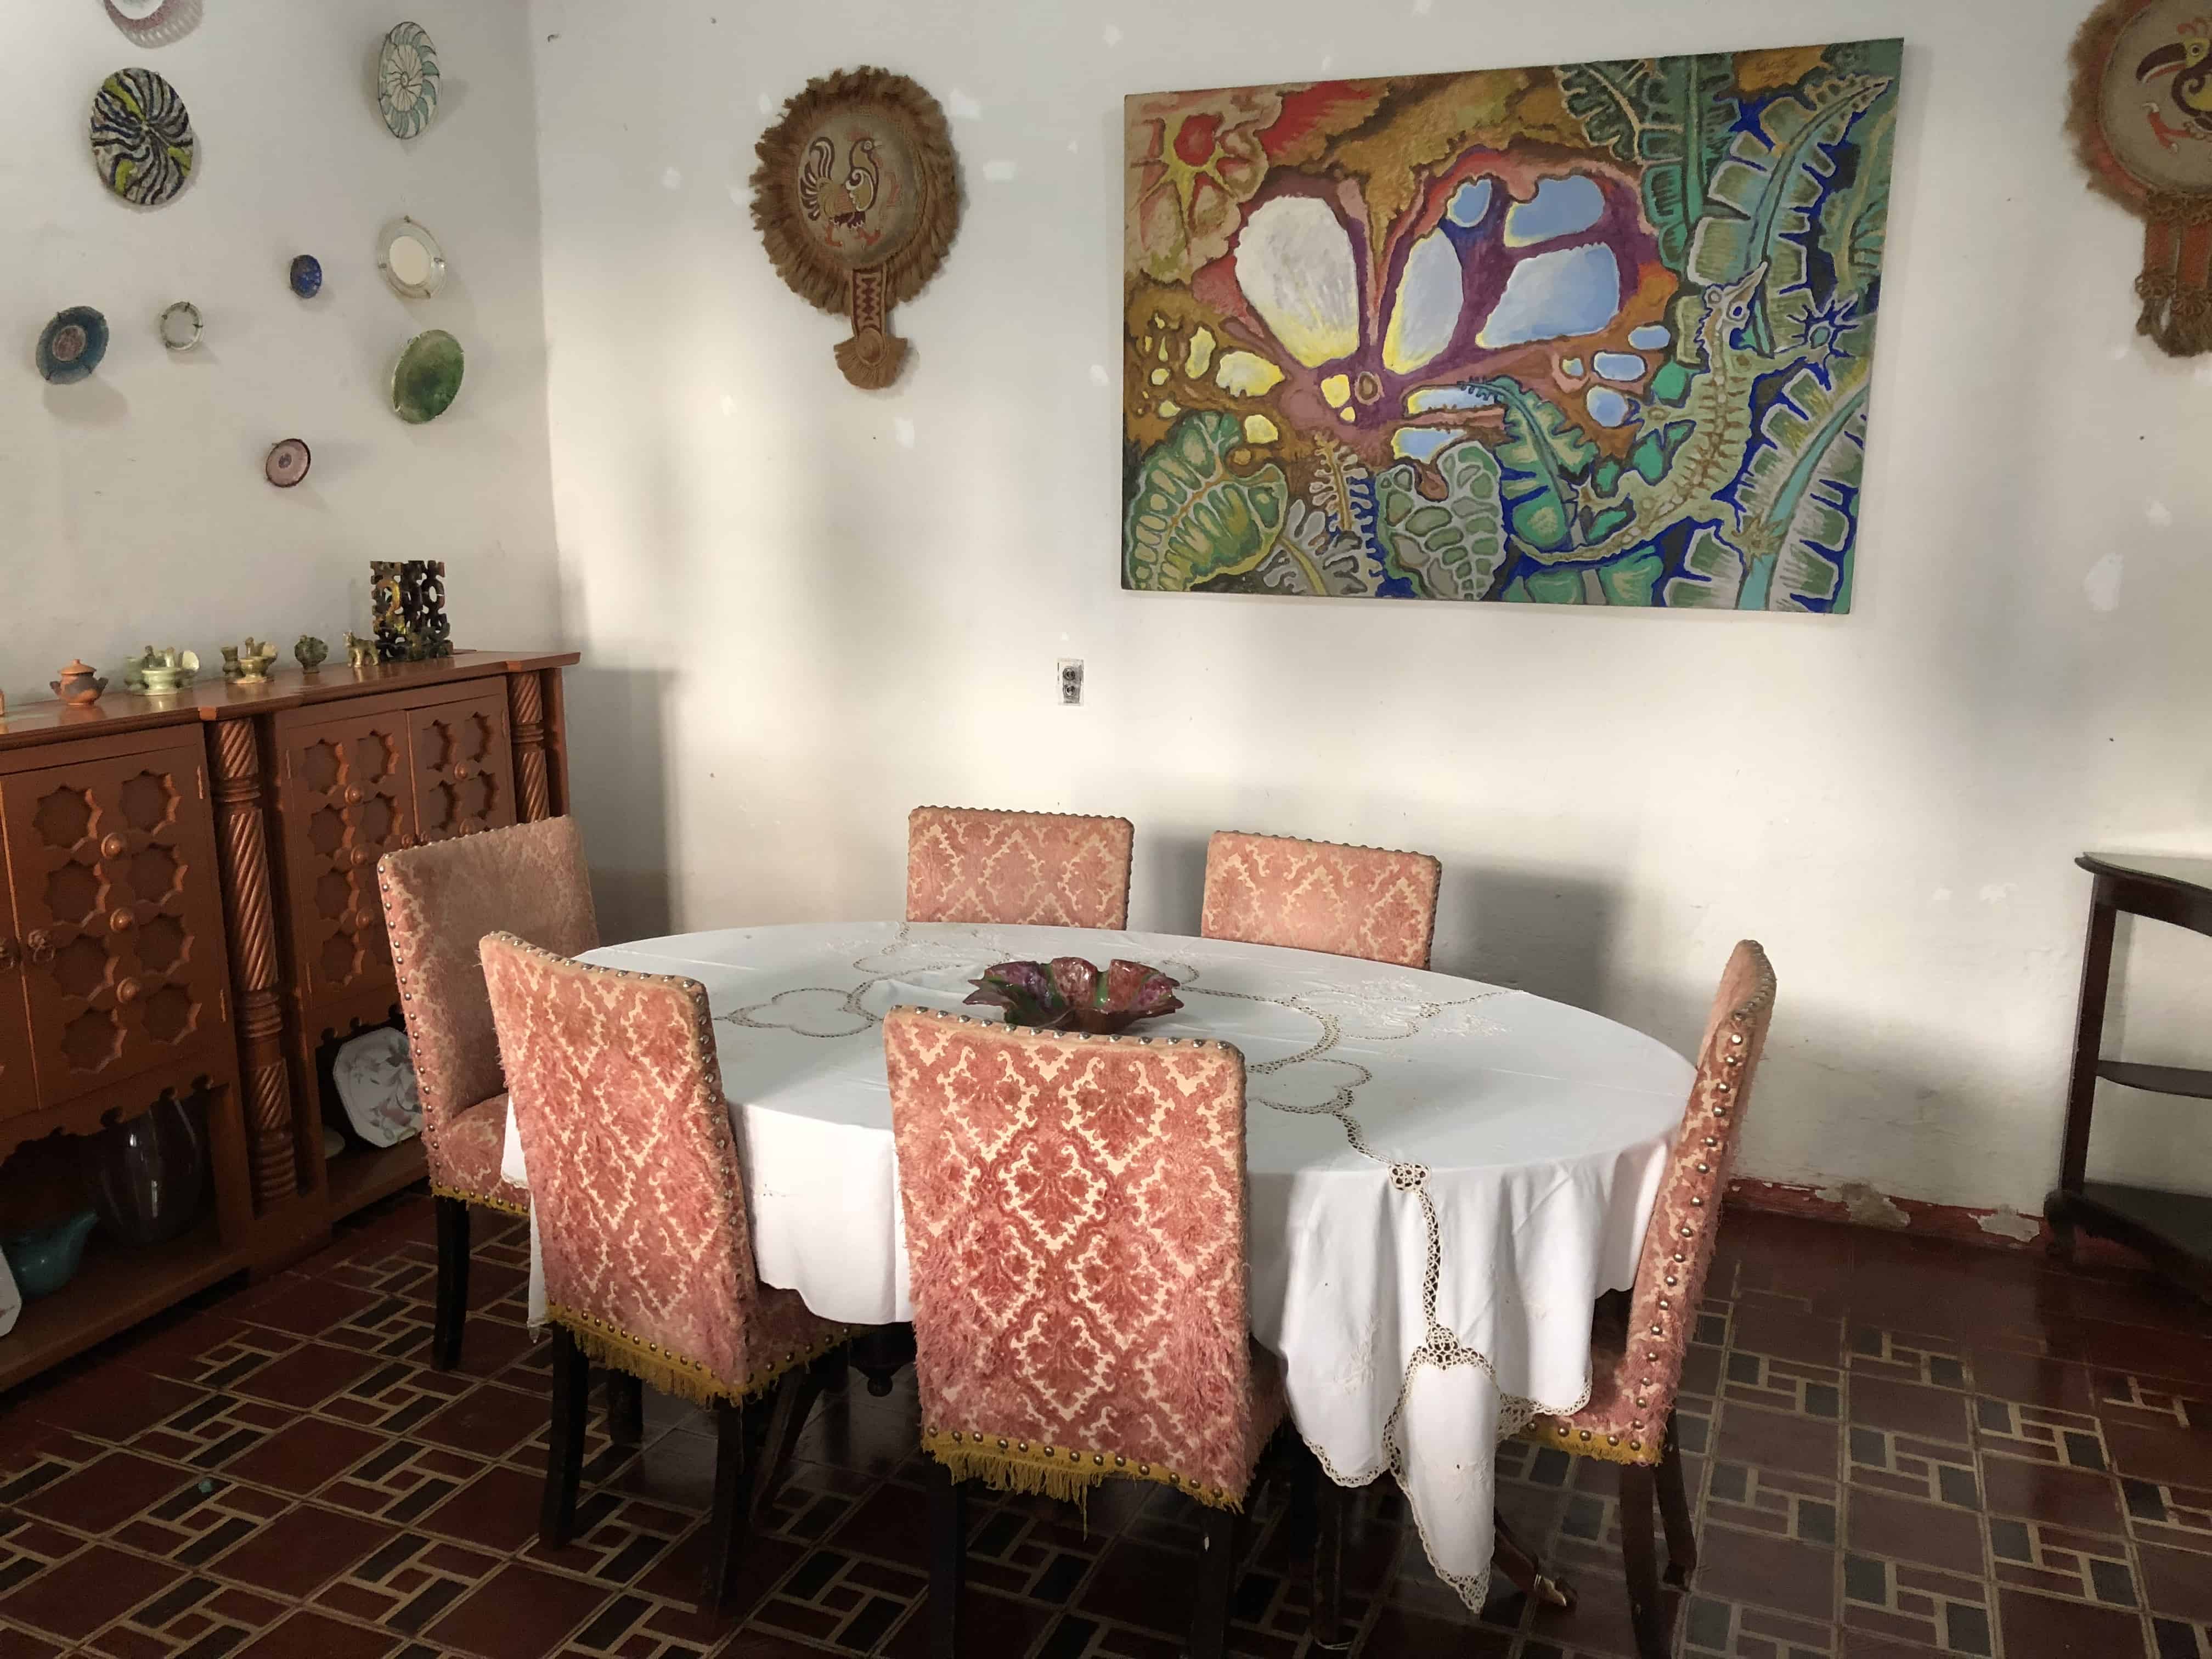 Dining room at Casa Museo Luis Alberto Acuña in Villa de Leyva, Boyacá, Colombia